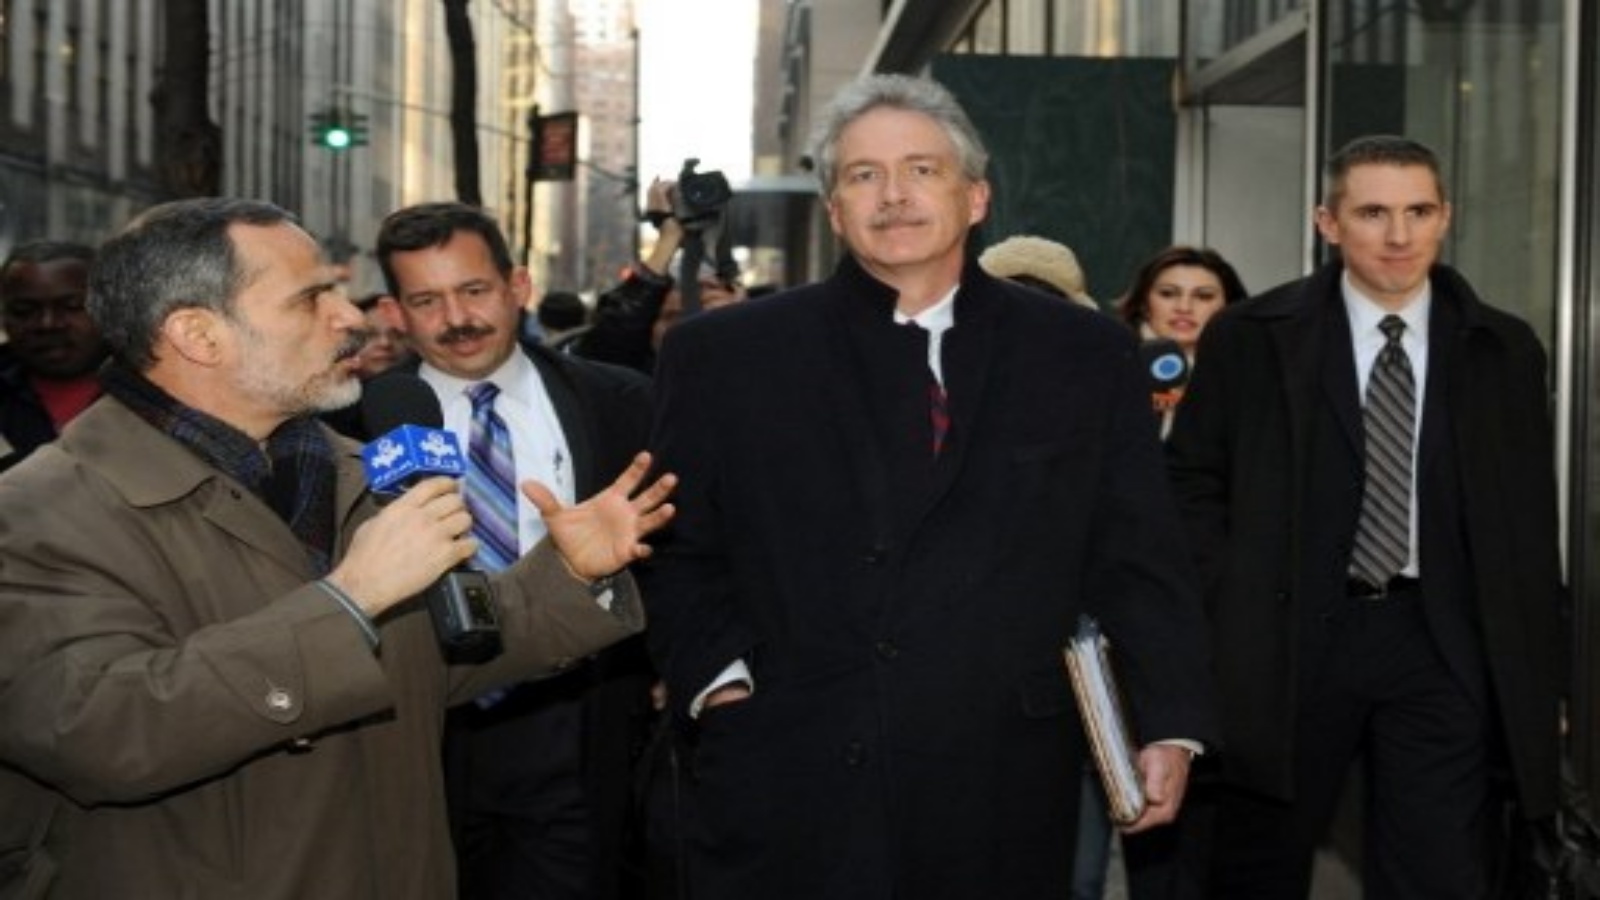 صورة التقطت في 16 يناير 2010 الدبلوماسي الأمريكي ويليامز بيرنز (وسط الصورة) وهو يغادر اجتماع 